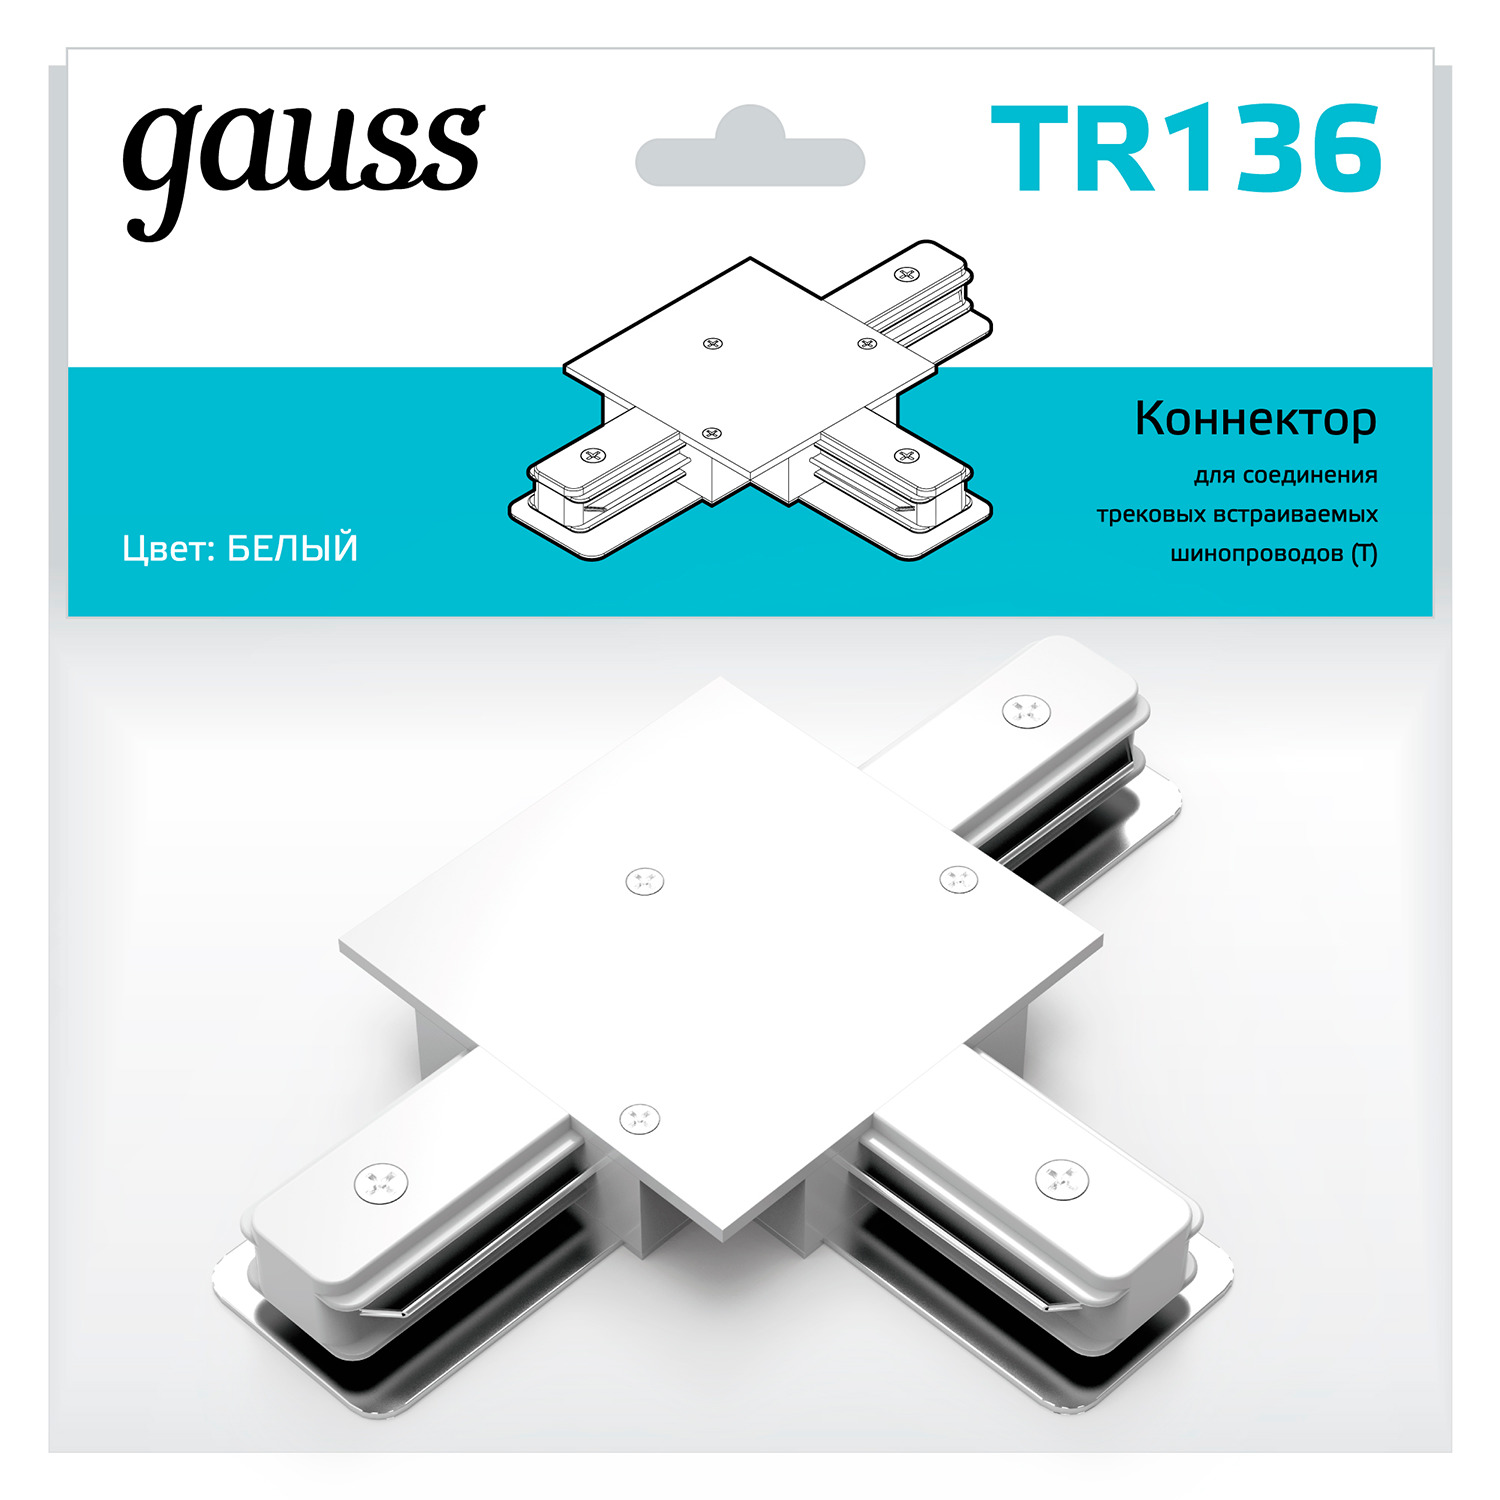 коннектор gauss для встраиваемых трековых шинопроводов угловой l белый 1 50 Коннектор Gauss для встраиваемых трековых шинопроводов (T) белый